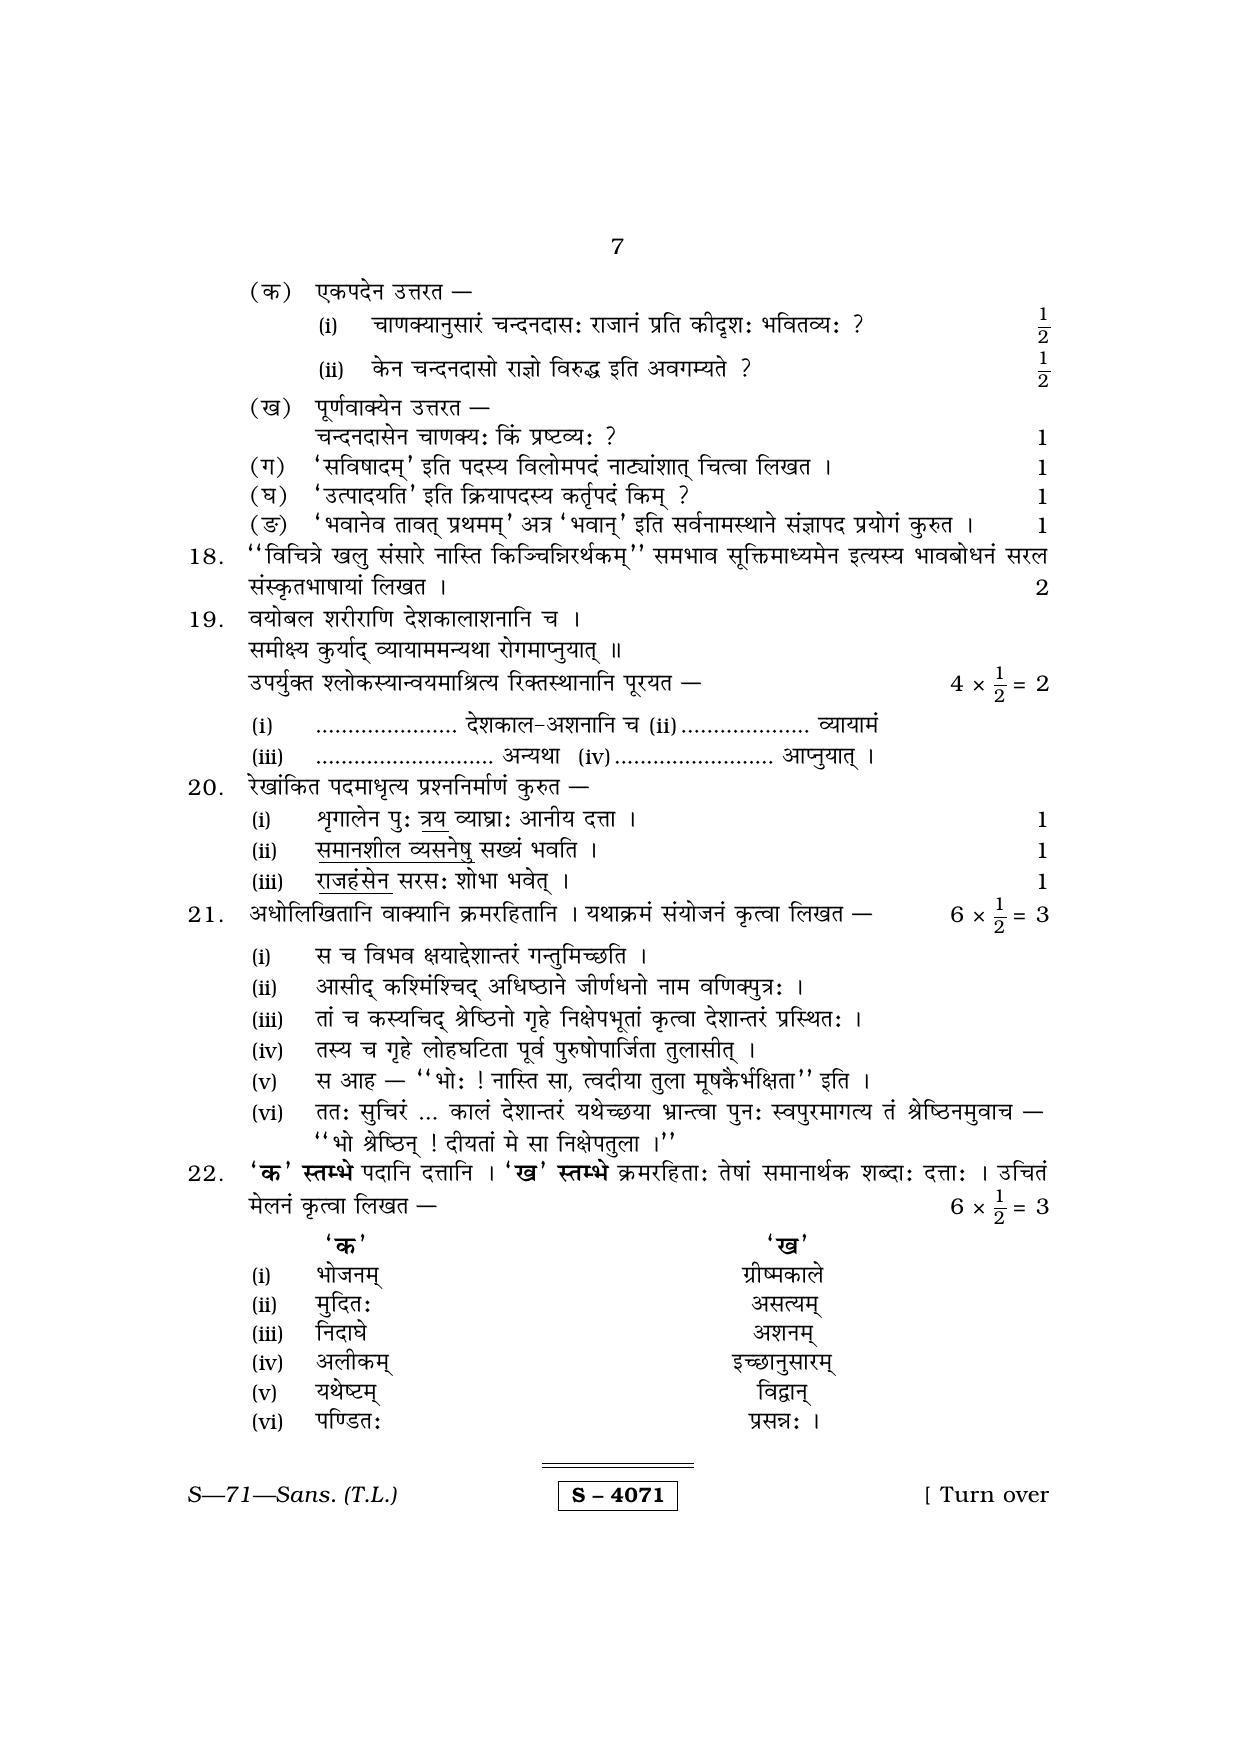 RBSE Class 10 Sanskrit (T.L.) 2015 Question Paper - Page 7